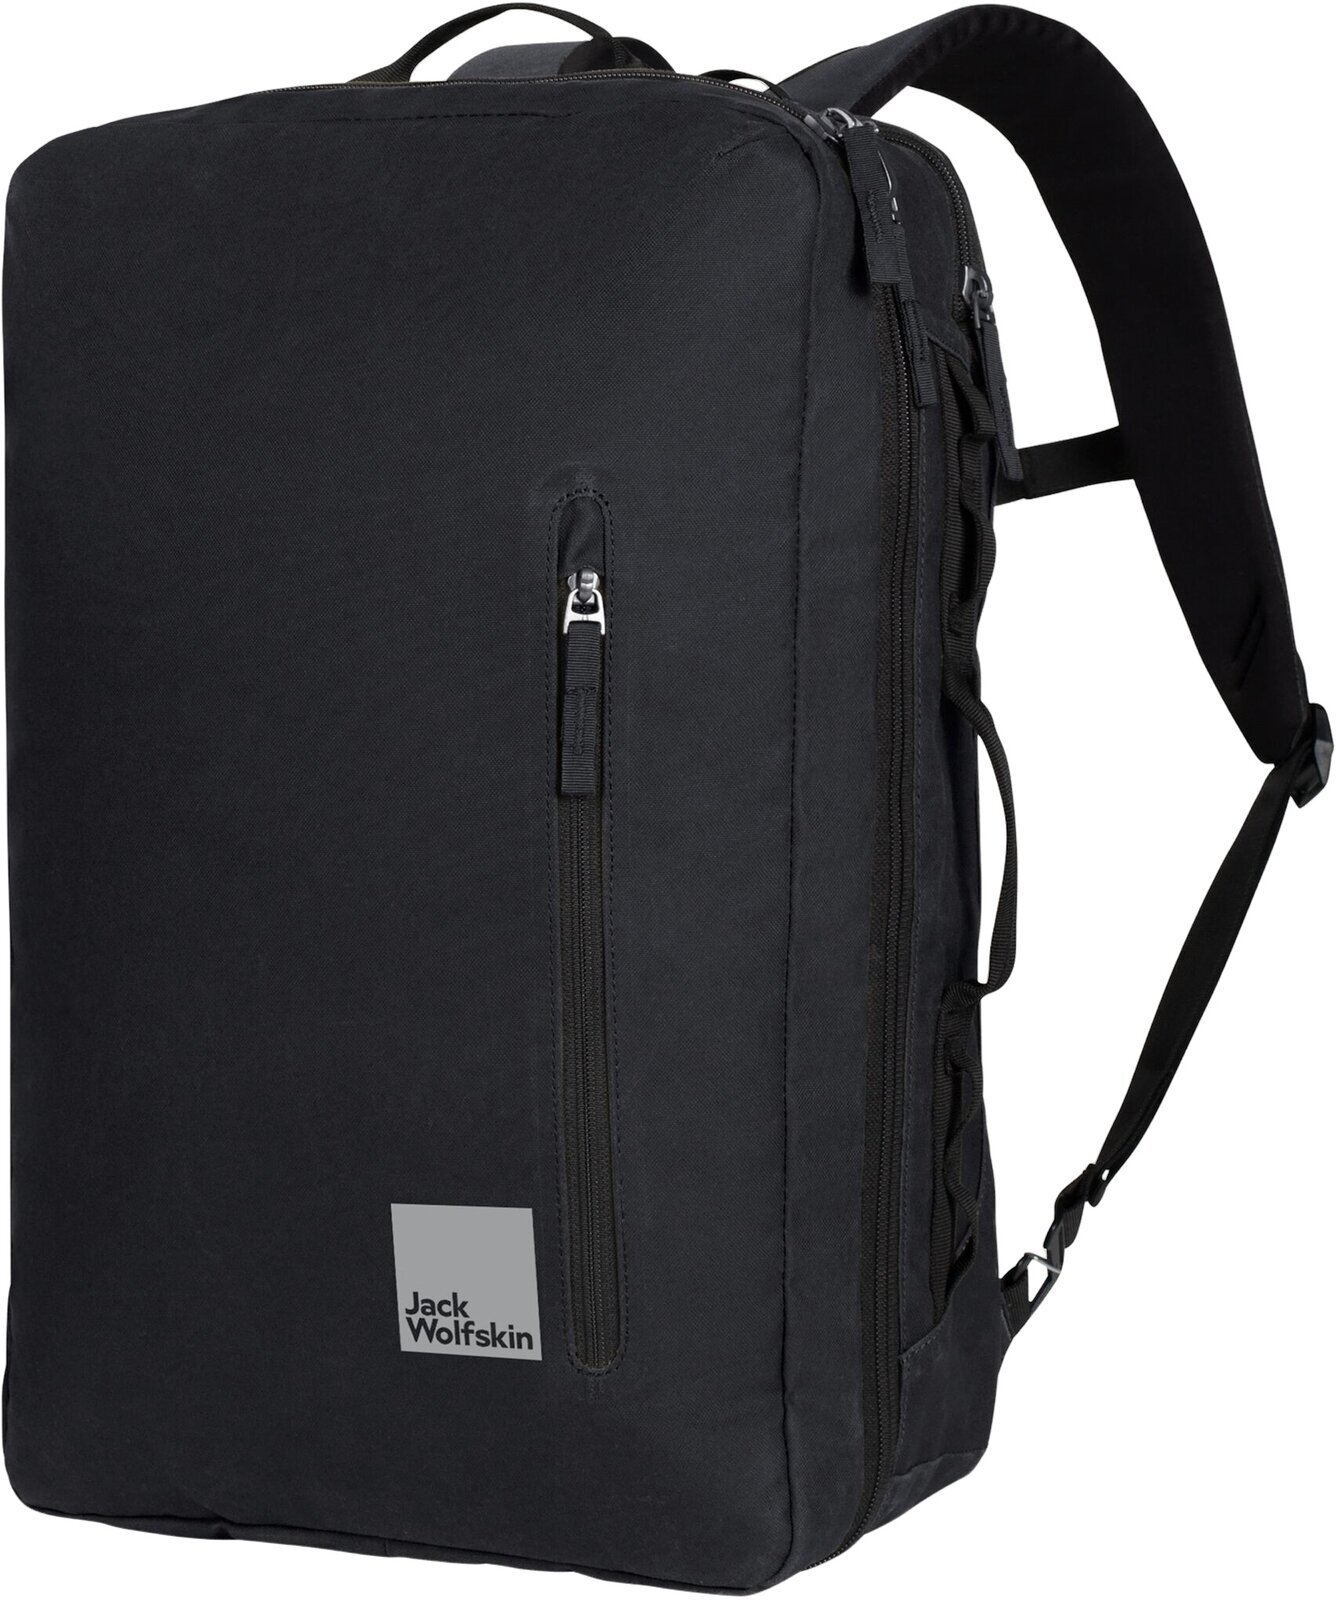 Lifestyle Backpack / Bag Jack Wolfskin Traveltopia Cabin Pack 30 Black 30 L Backpack